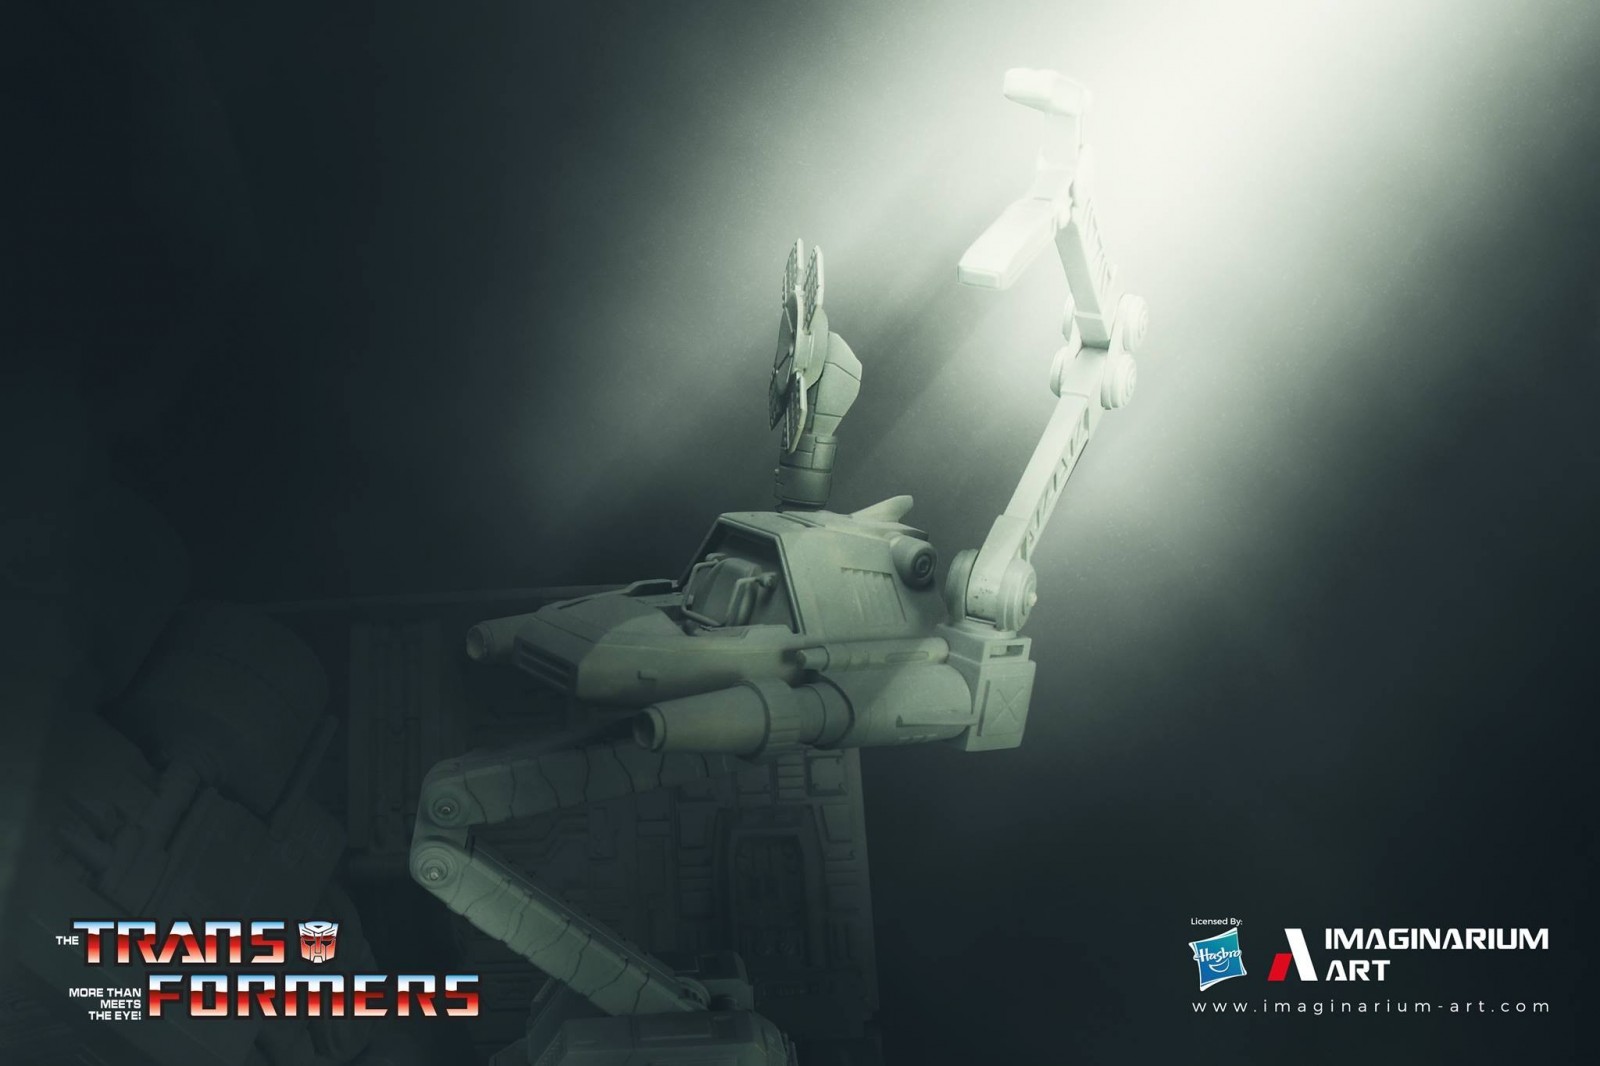 Transformers News: Prototype Images of Imaginarium Art G1 Optimus Prime Statue